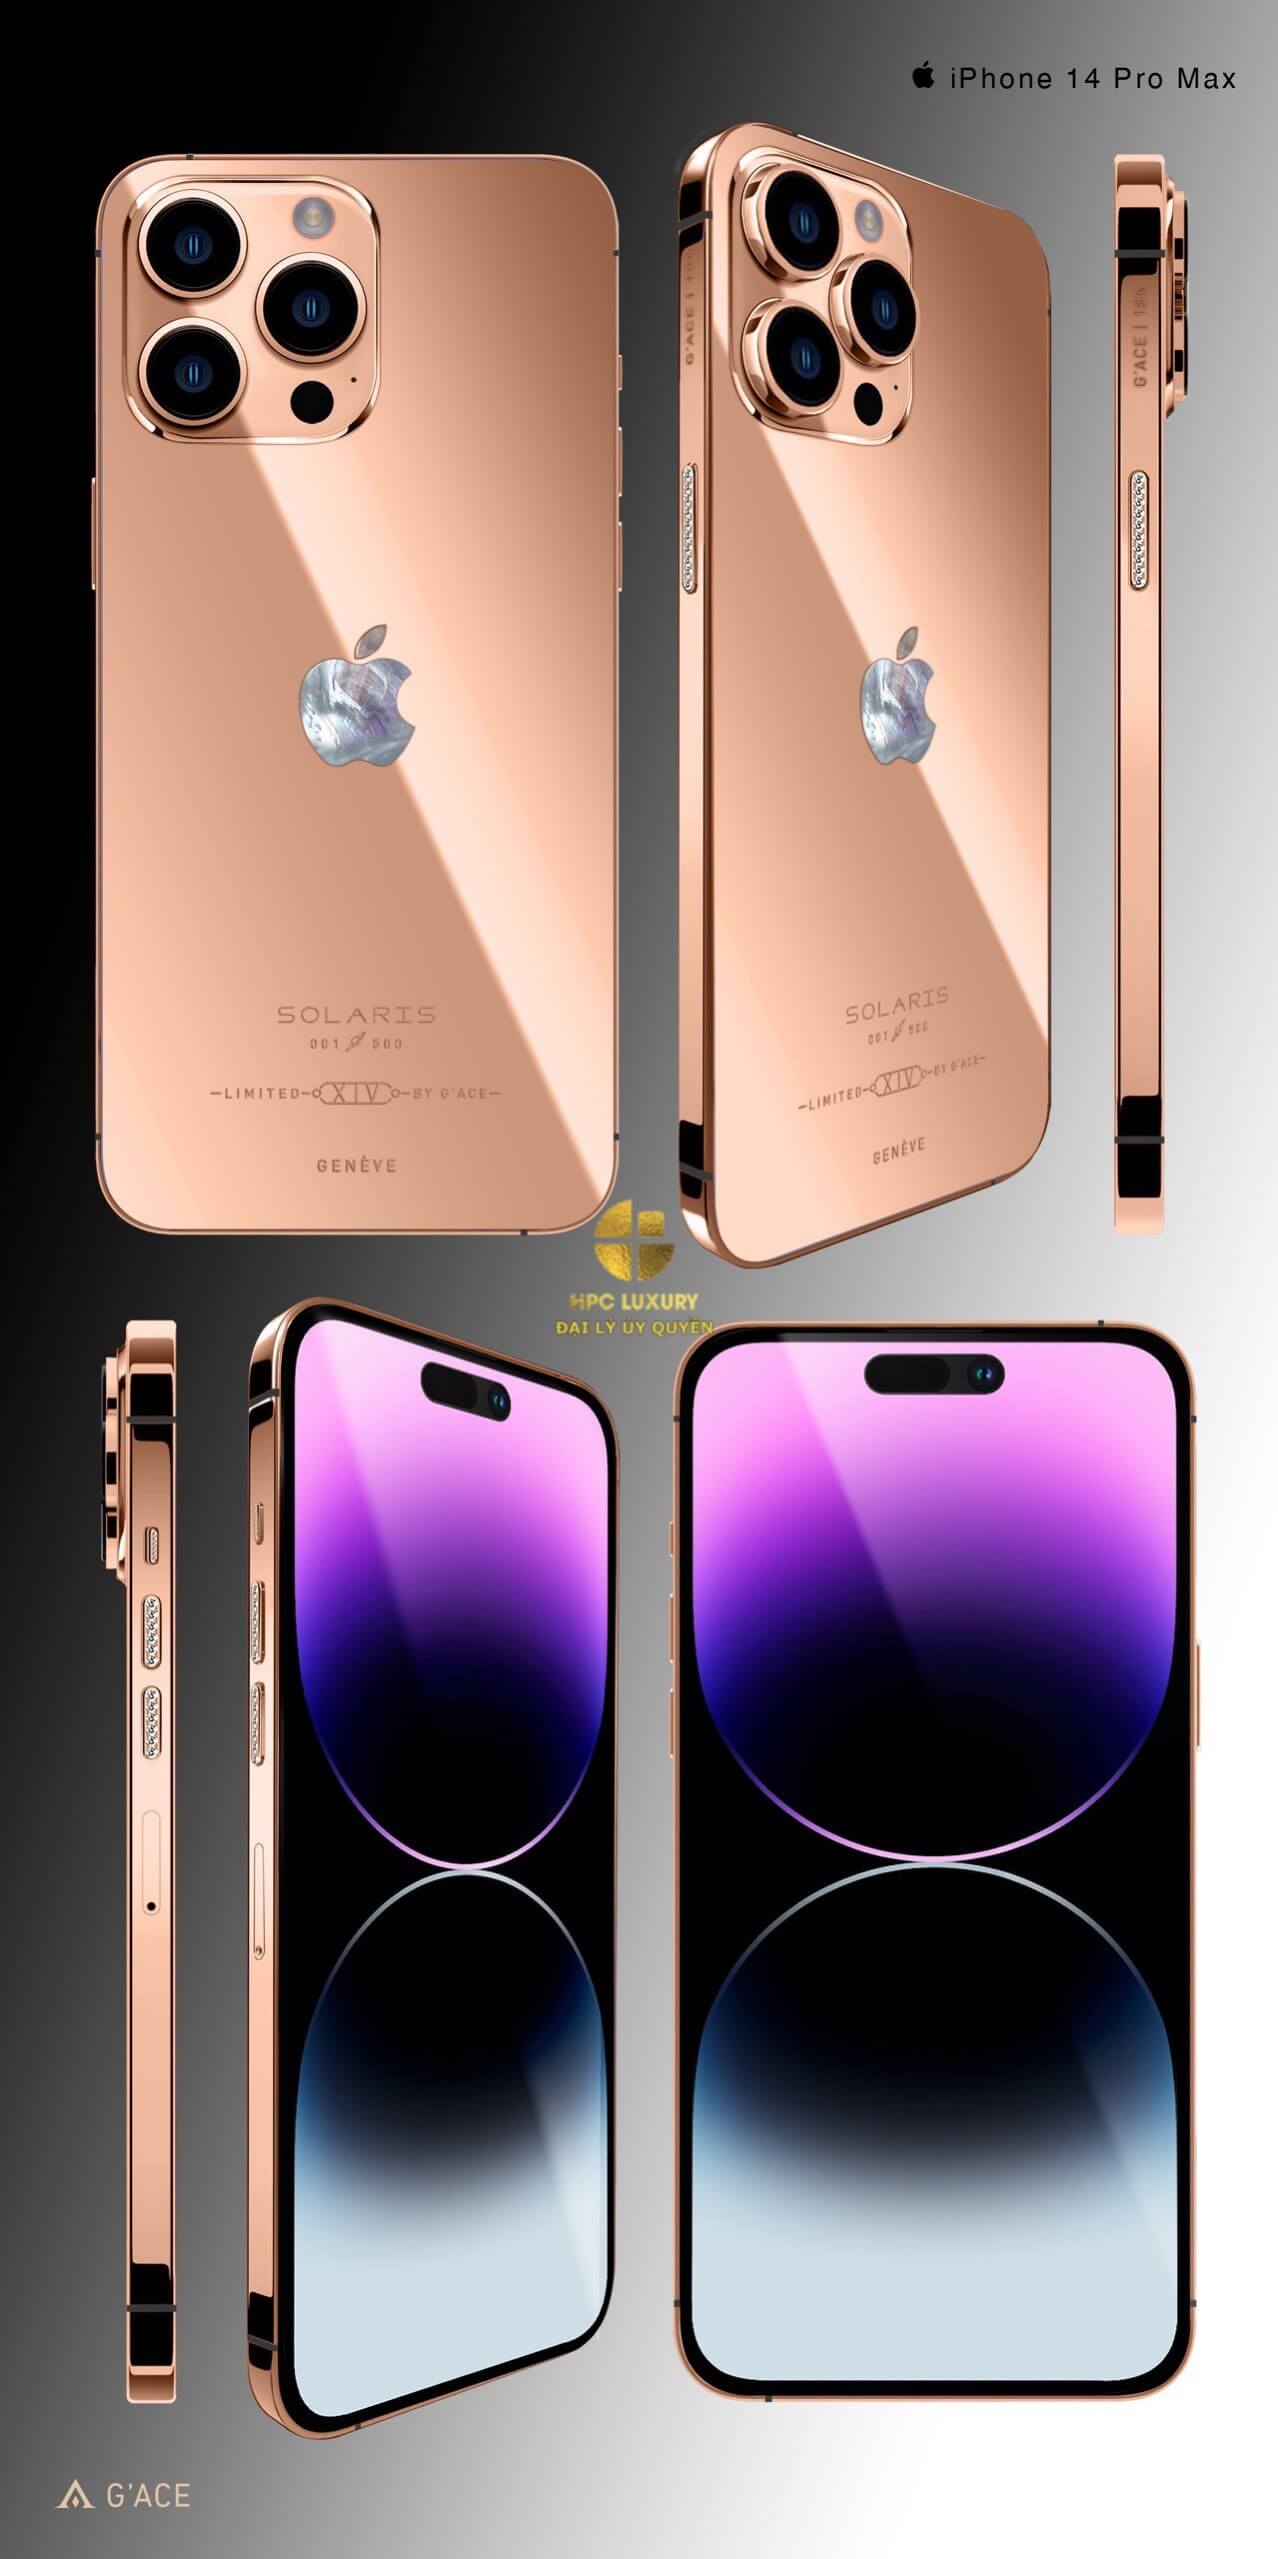 Chỉ nhìn vào chiếc iPhone 14 Pro Max mạ vàng Gold Solaris Limited 256 Gb của HPC Luxury là đã thấy ngay sự sang trọng và đẳng cấp. Với thiết kế độc đáo và phong cách, điện thoại này sẽ là một món đồ trang sức tuyệt vời cho bất kỳ ai muốn thể hiện sự giàu có và đẳng cấp.